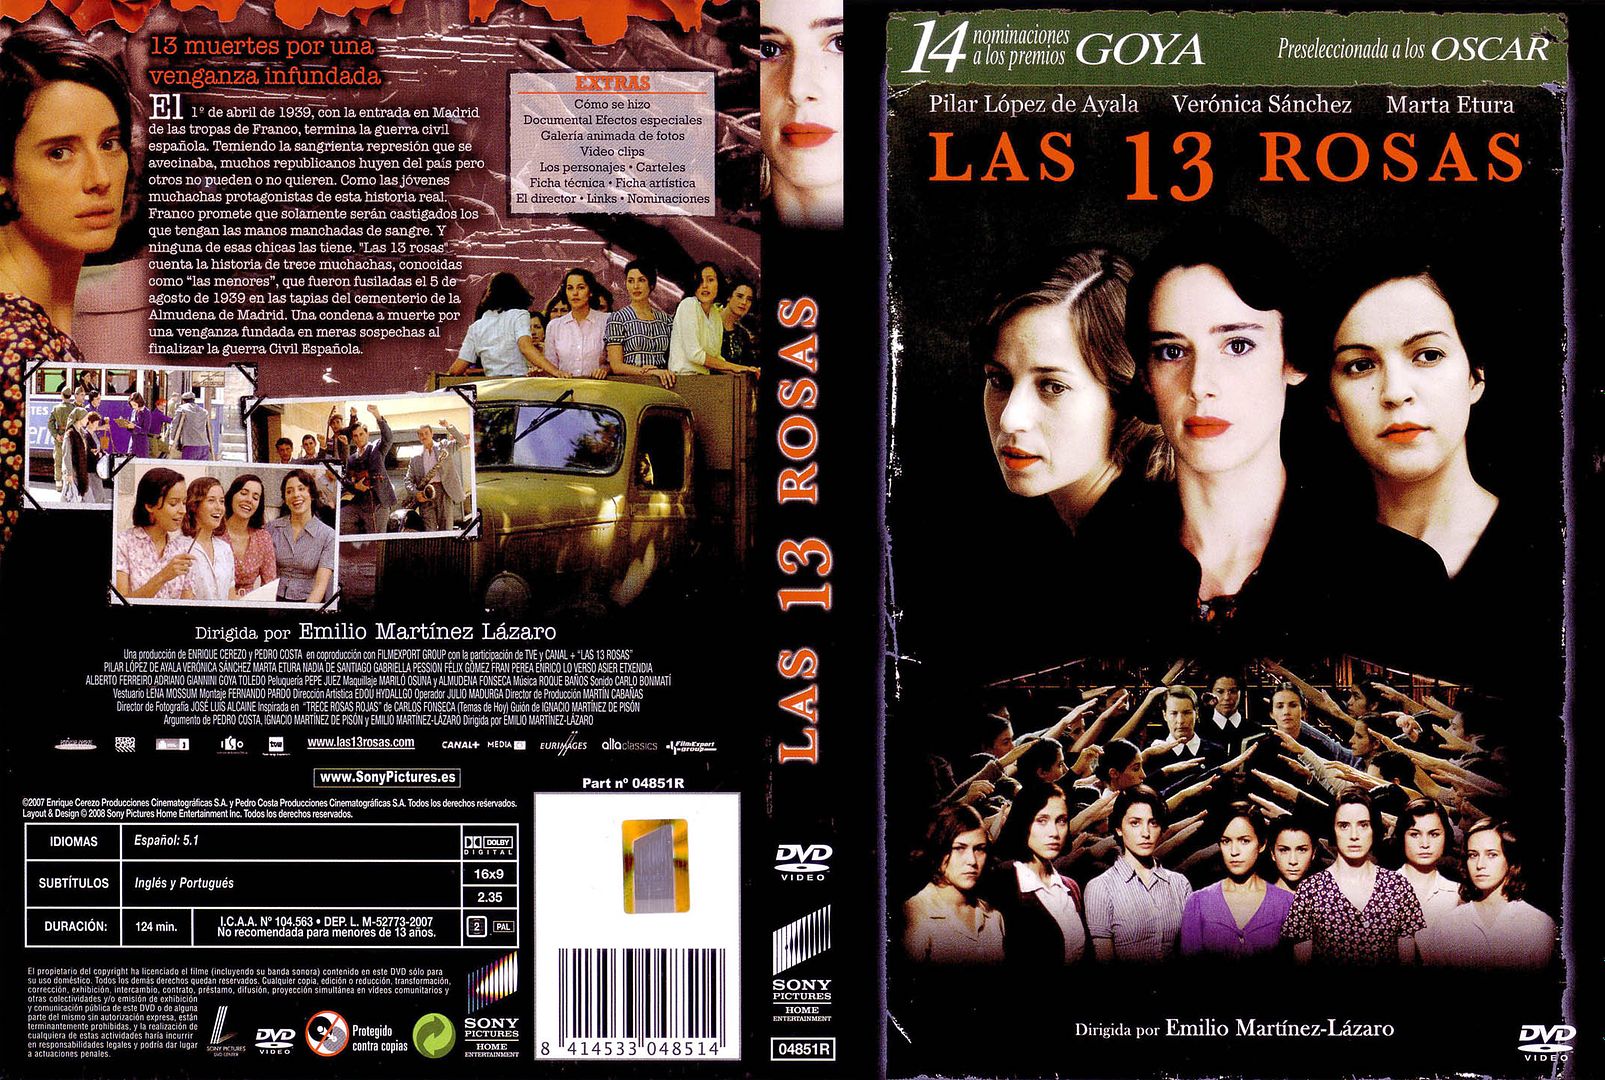 Las 13 Rosas Caratula - Las 13 Rosas Tvrip Español (2007) Drama-Historico